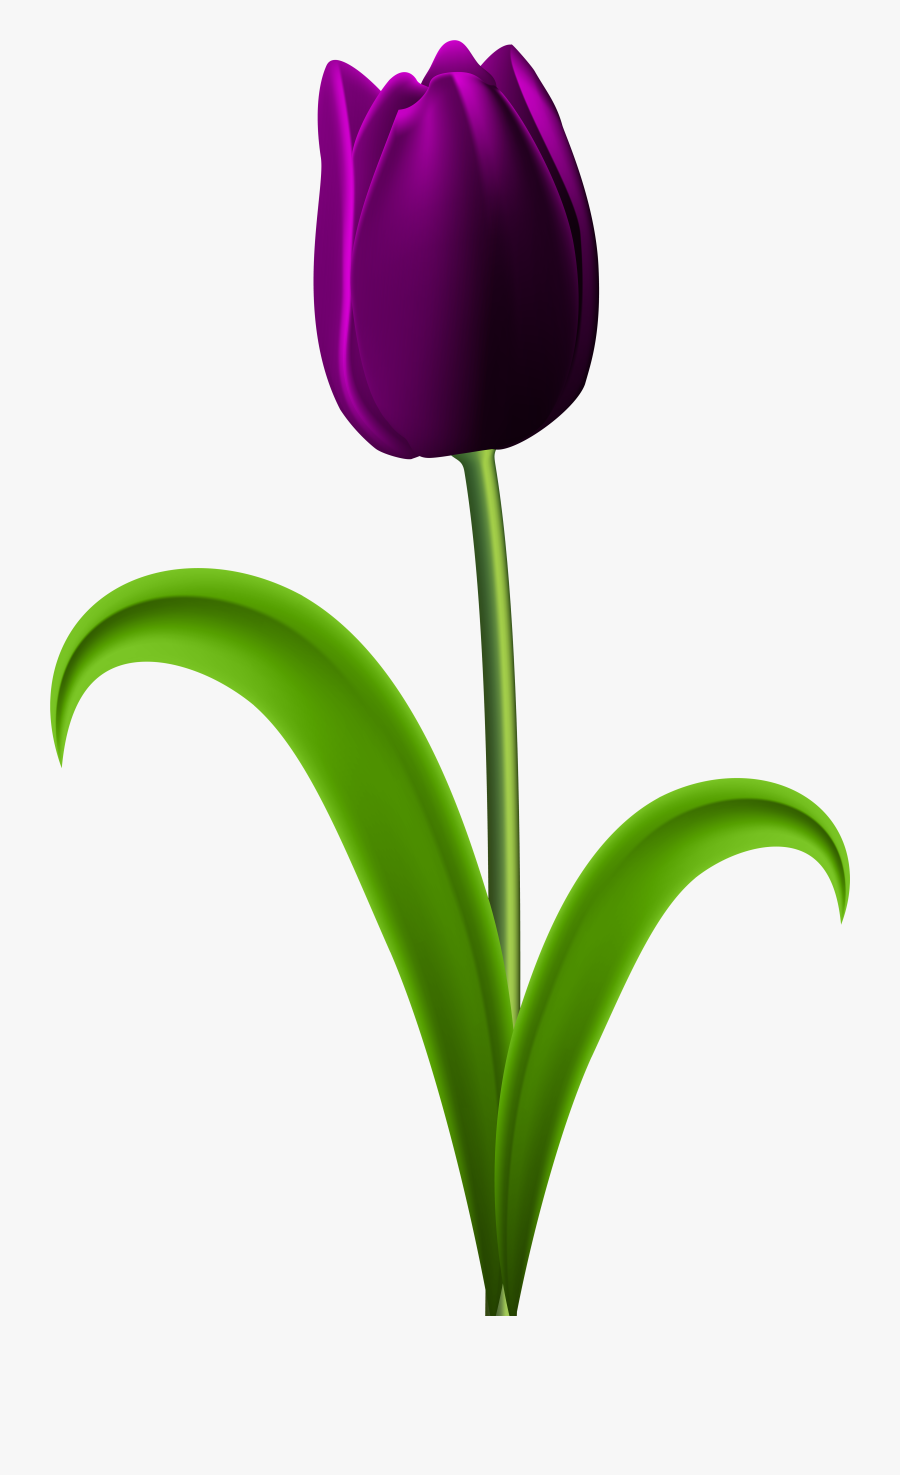 Flower Clipart Tulip - Purple Tulips Flowers Clipart, Transparent Clipart